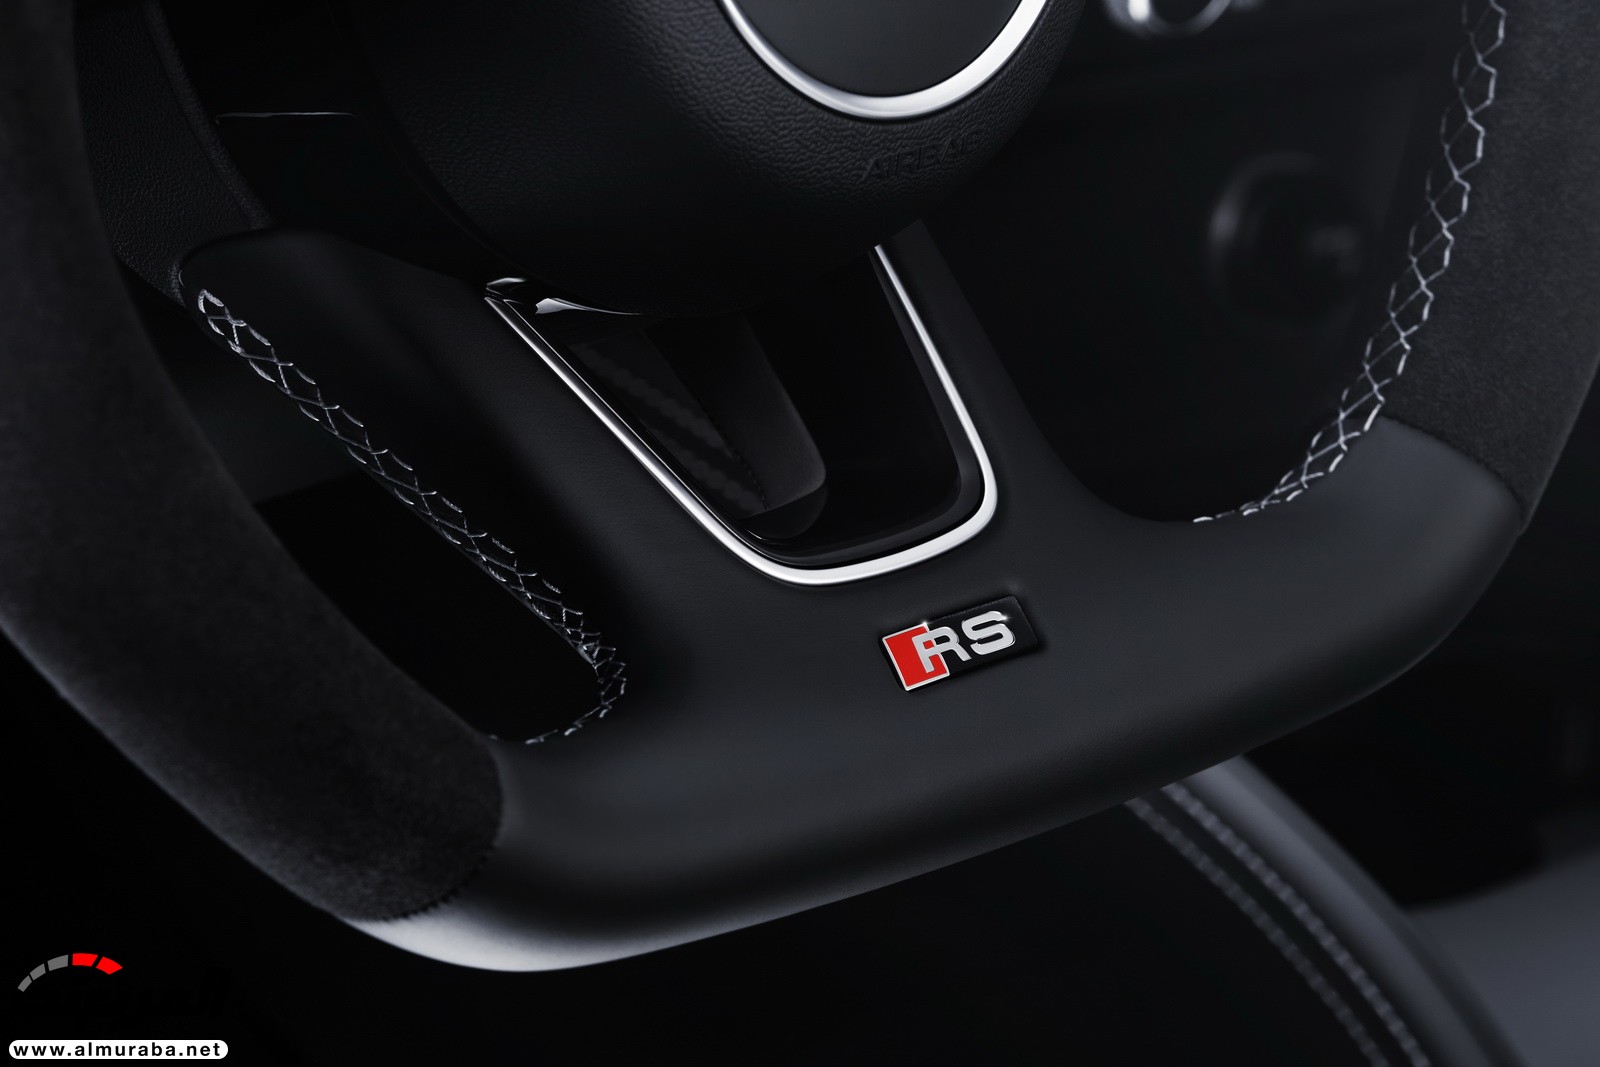 "أودي" تكشف عن RS3 الجديدة كليا 2018 بقوة 395 حصان Audi 27